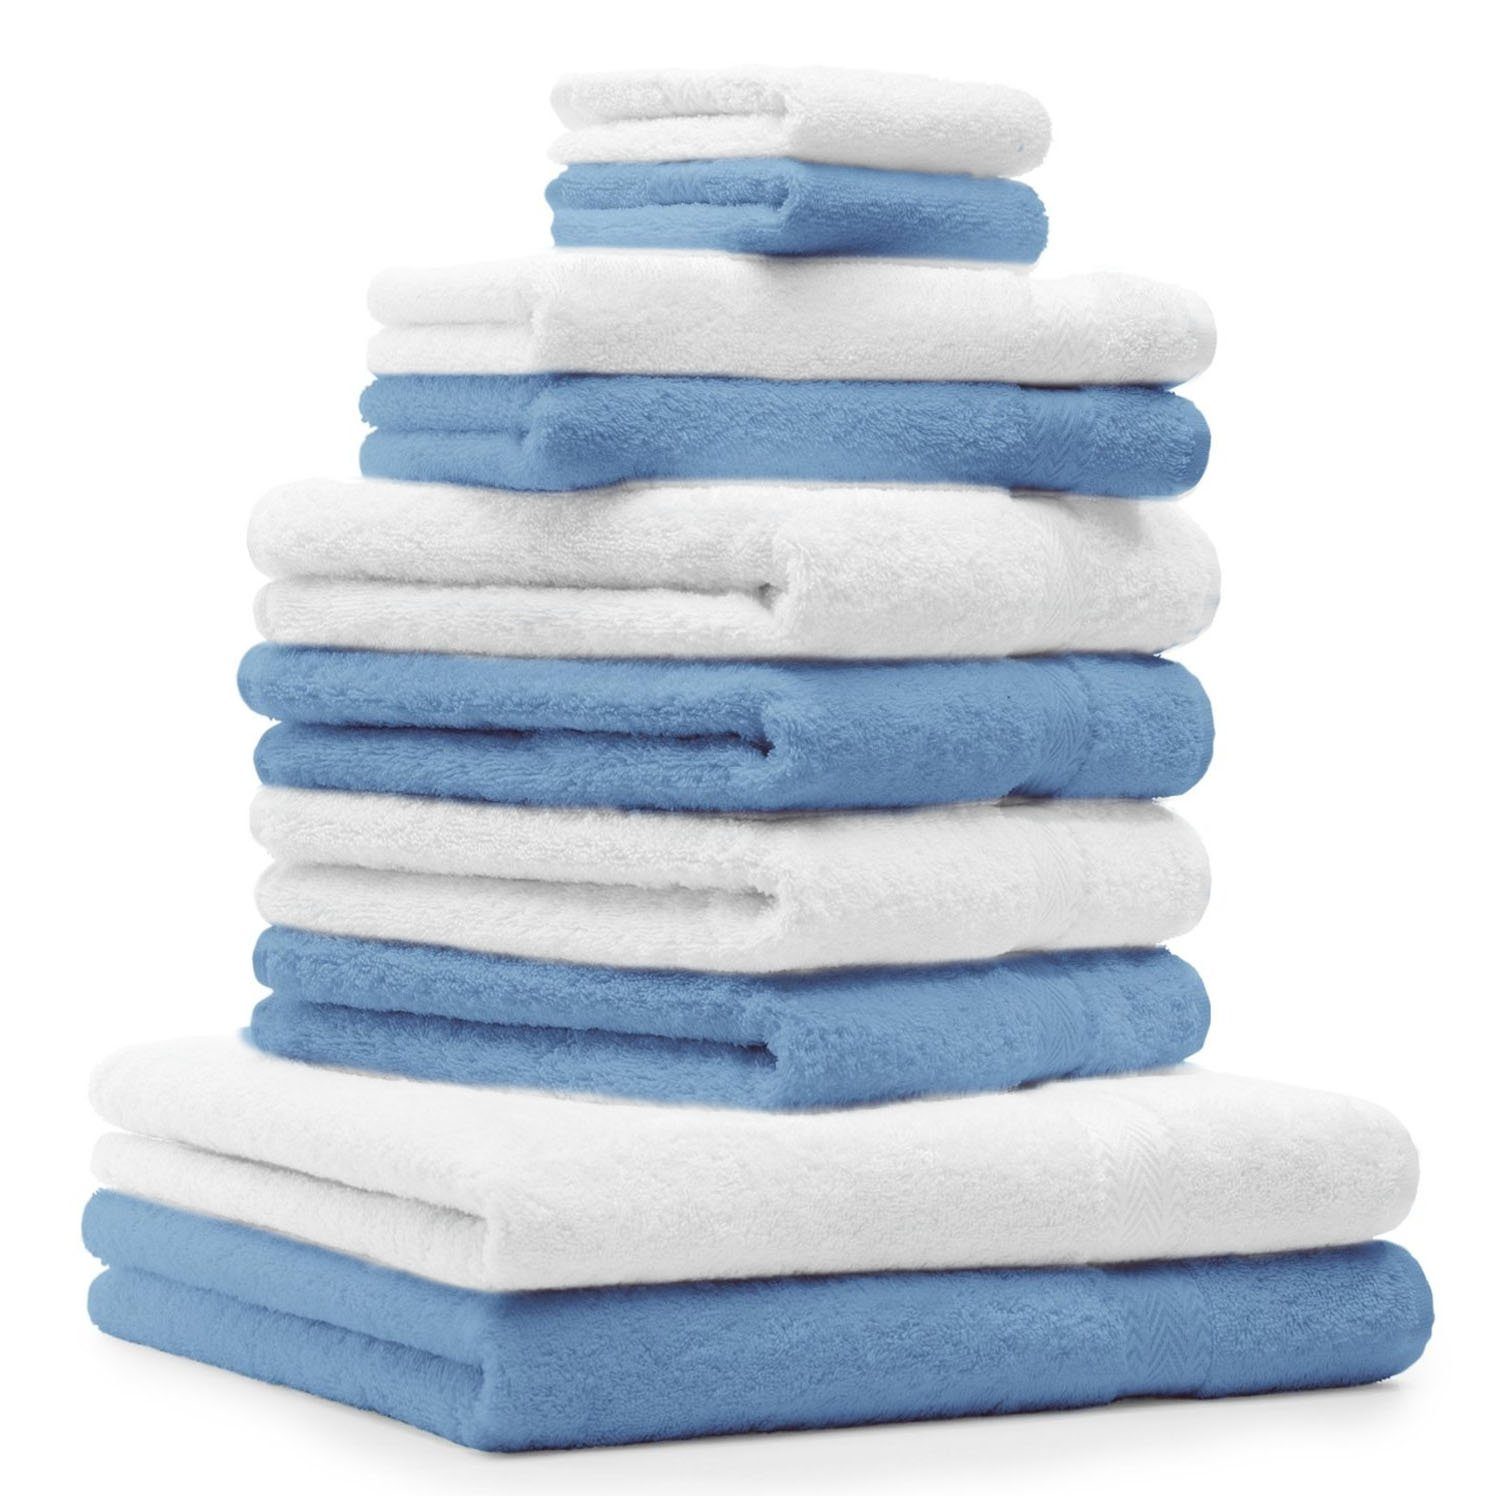 Betz Handtuch Set 10-TLG. Handtuch-Set Premium Farbe Hellblau & Weiß, Baumwolle, (10-tlg)